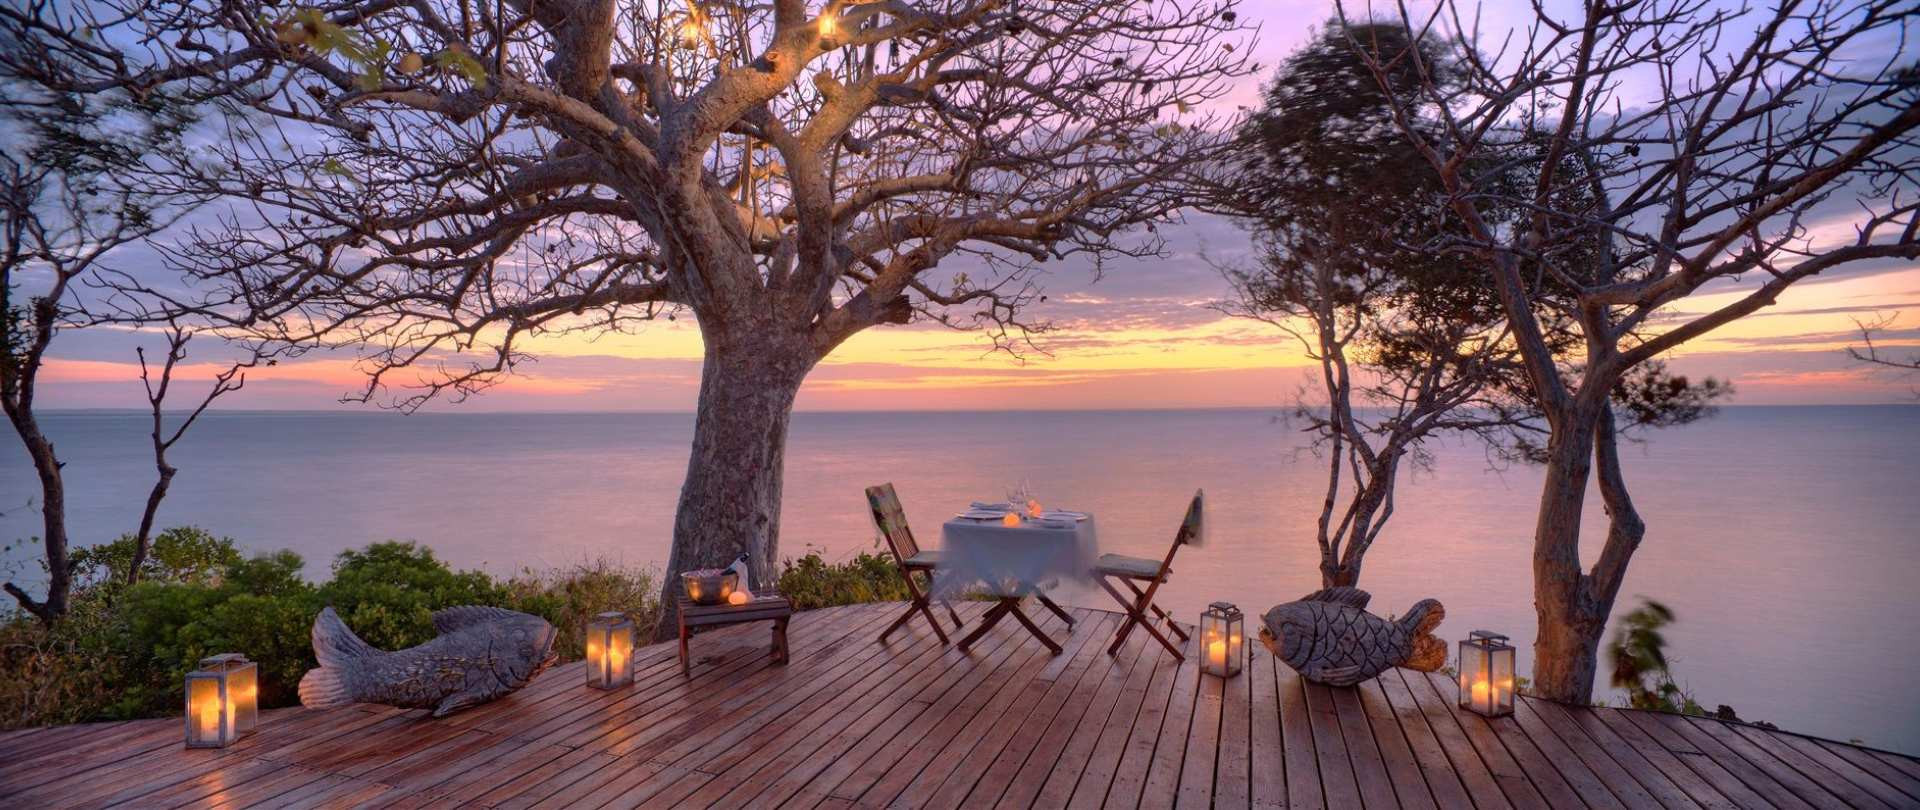 Ak chcete zostať na súkromnom ostrove v Mozambiku, budete si musieť rezervovať prístrešie cez spoločnosť Azura Retreats, ktorá ho vlastní. Mimo jej luxusného ubytovania je ostrov úplne neobývaný. 